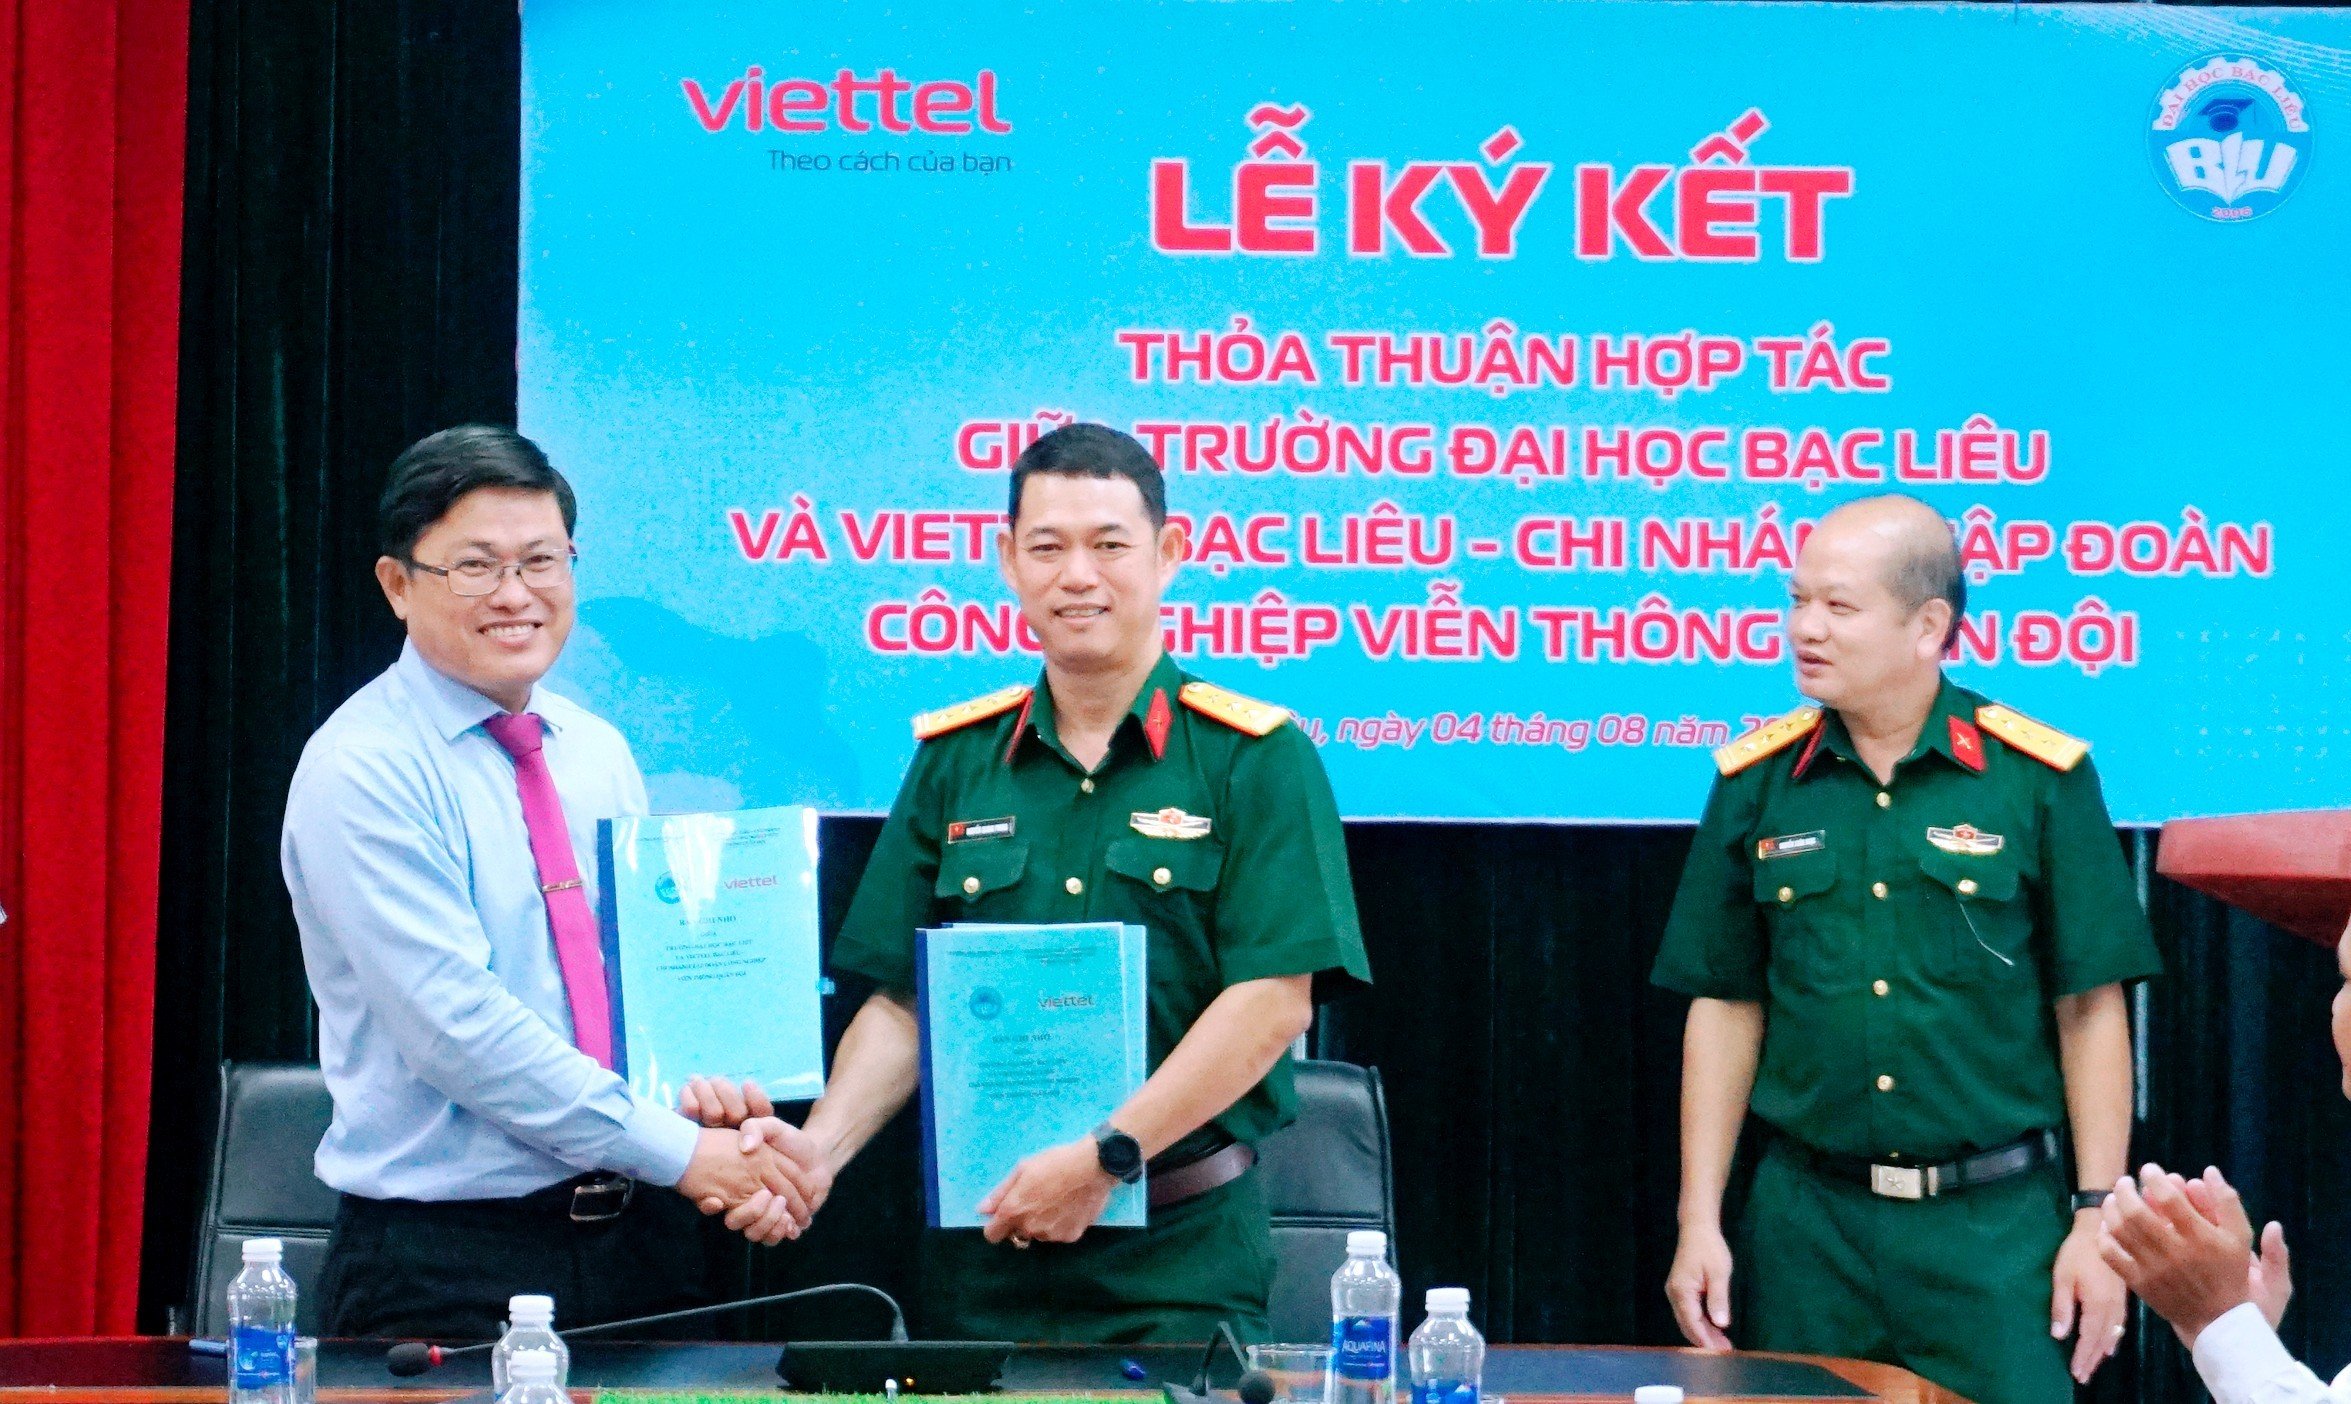 Trường Đại học Bạc Liêu ký kết hợp tác với Viettel Tỉnh Bạc Liêu